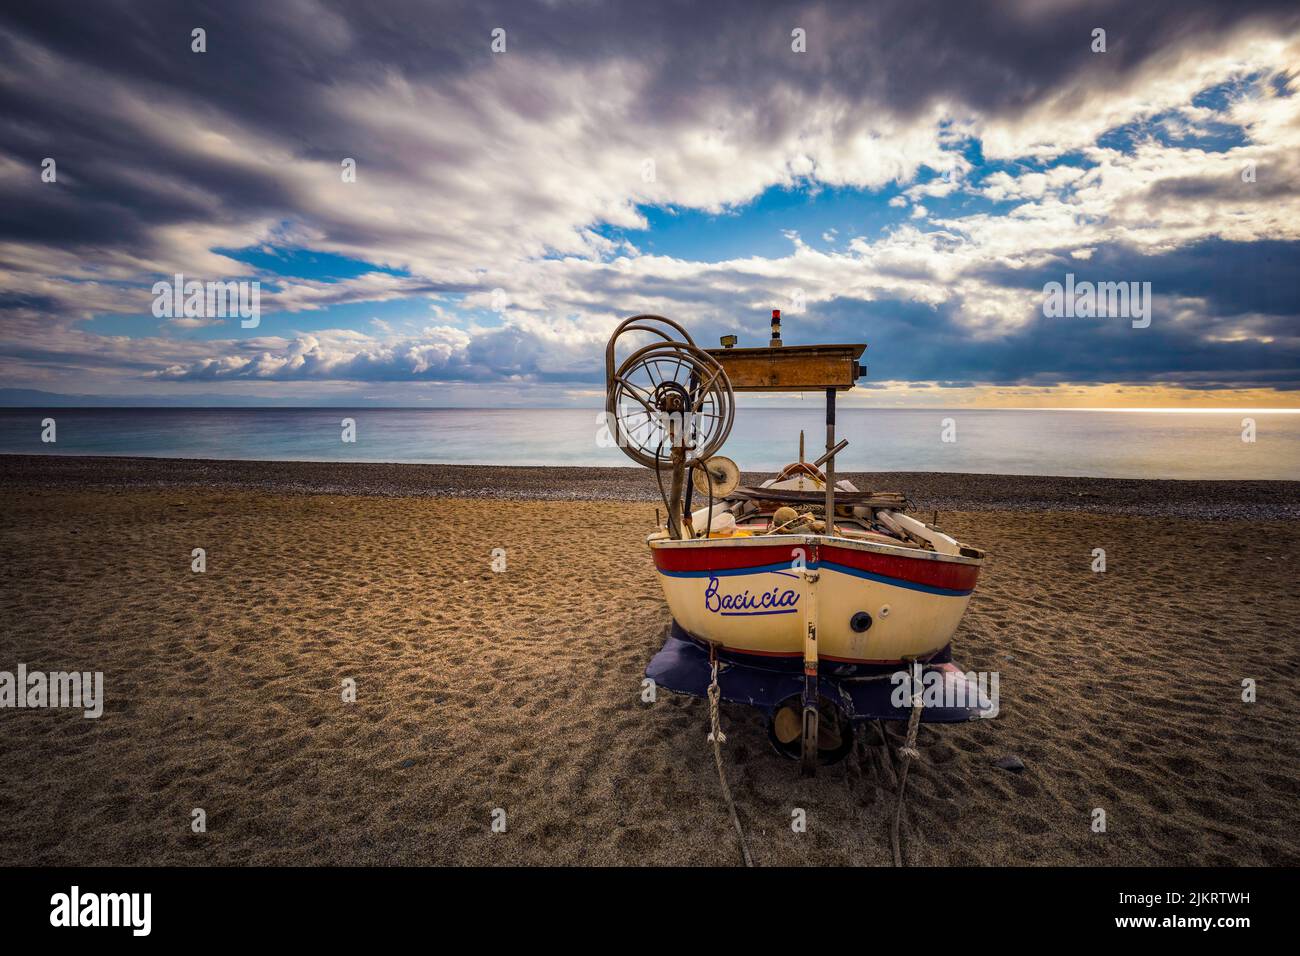 Italy Liguria Ponente Noli Boats on the beach Stock Photo